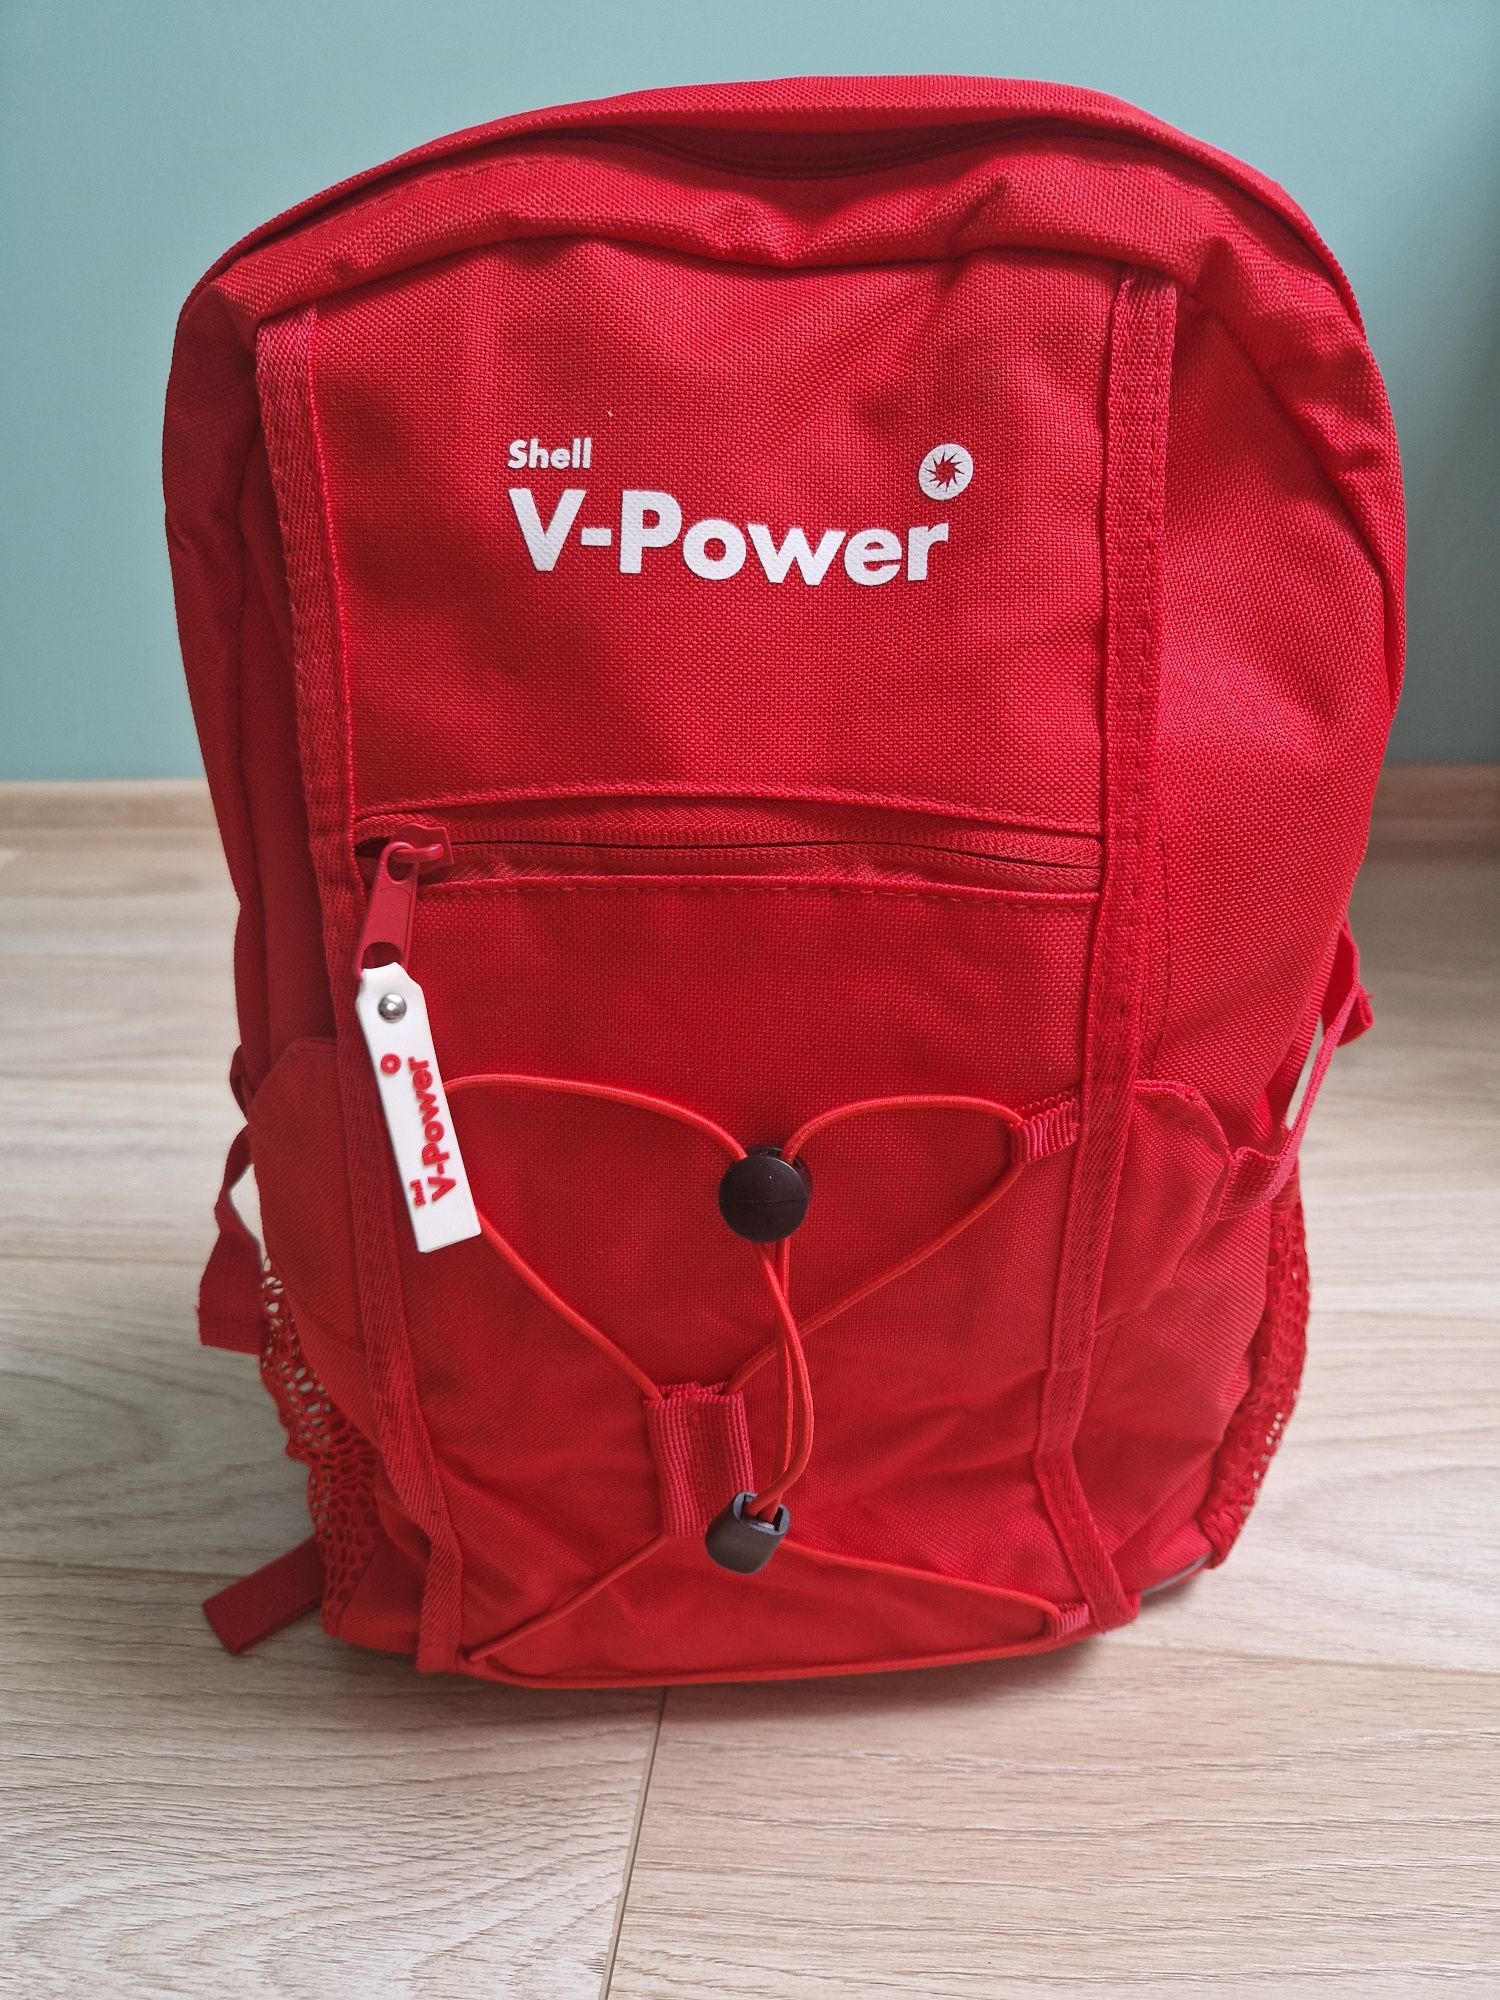 Plecak czerwony średniej wielkości na wycieczkę/mały bagaż podręczny